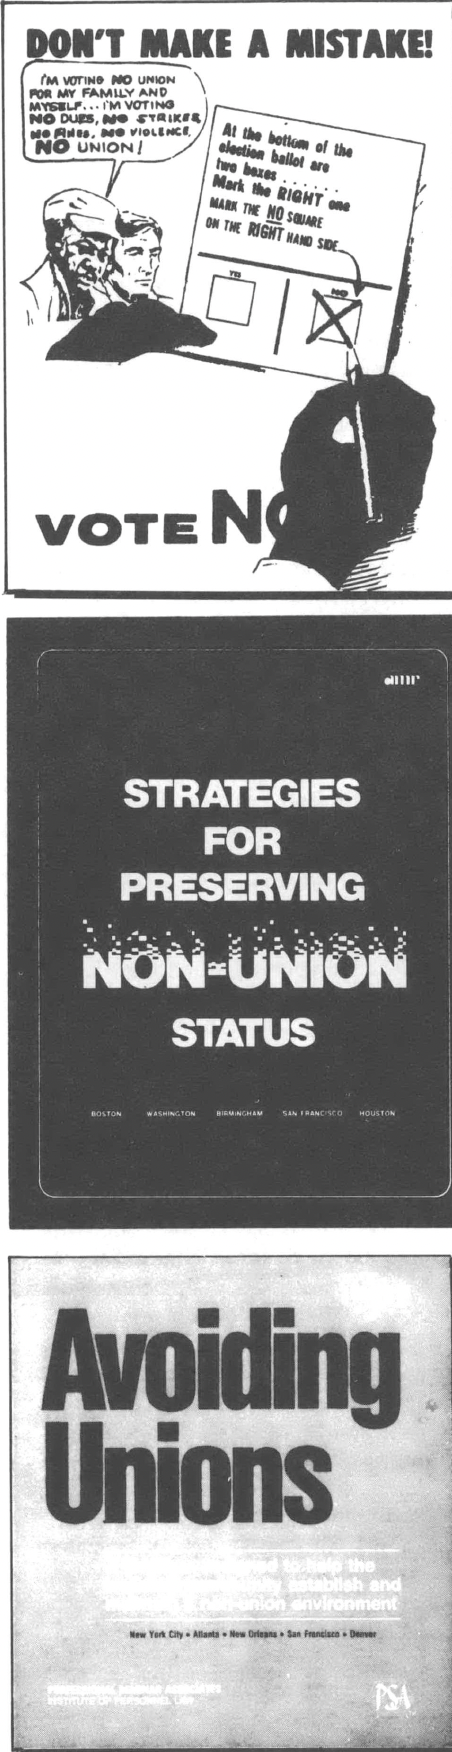 Black and white collage of anti-union propaganda